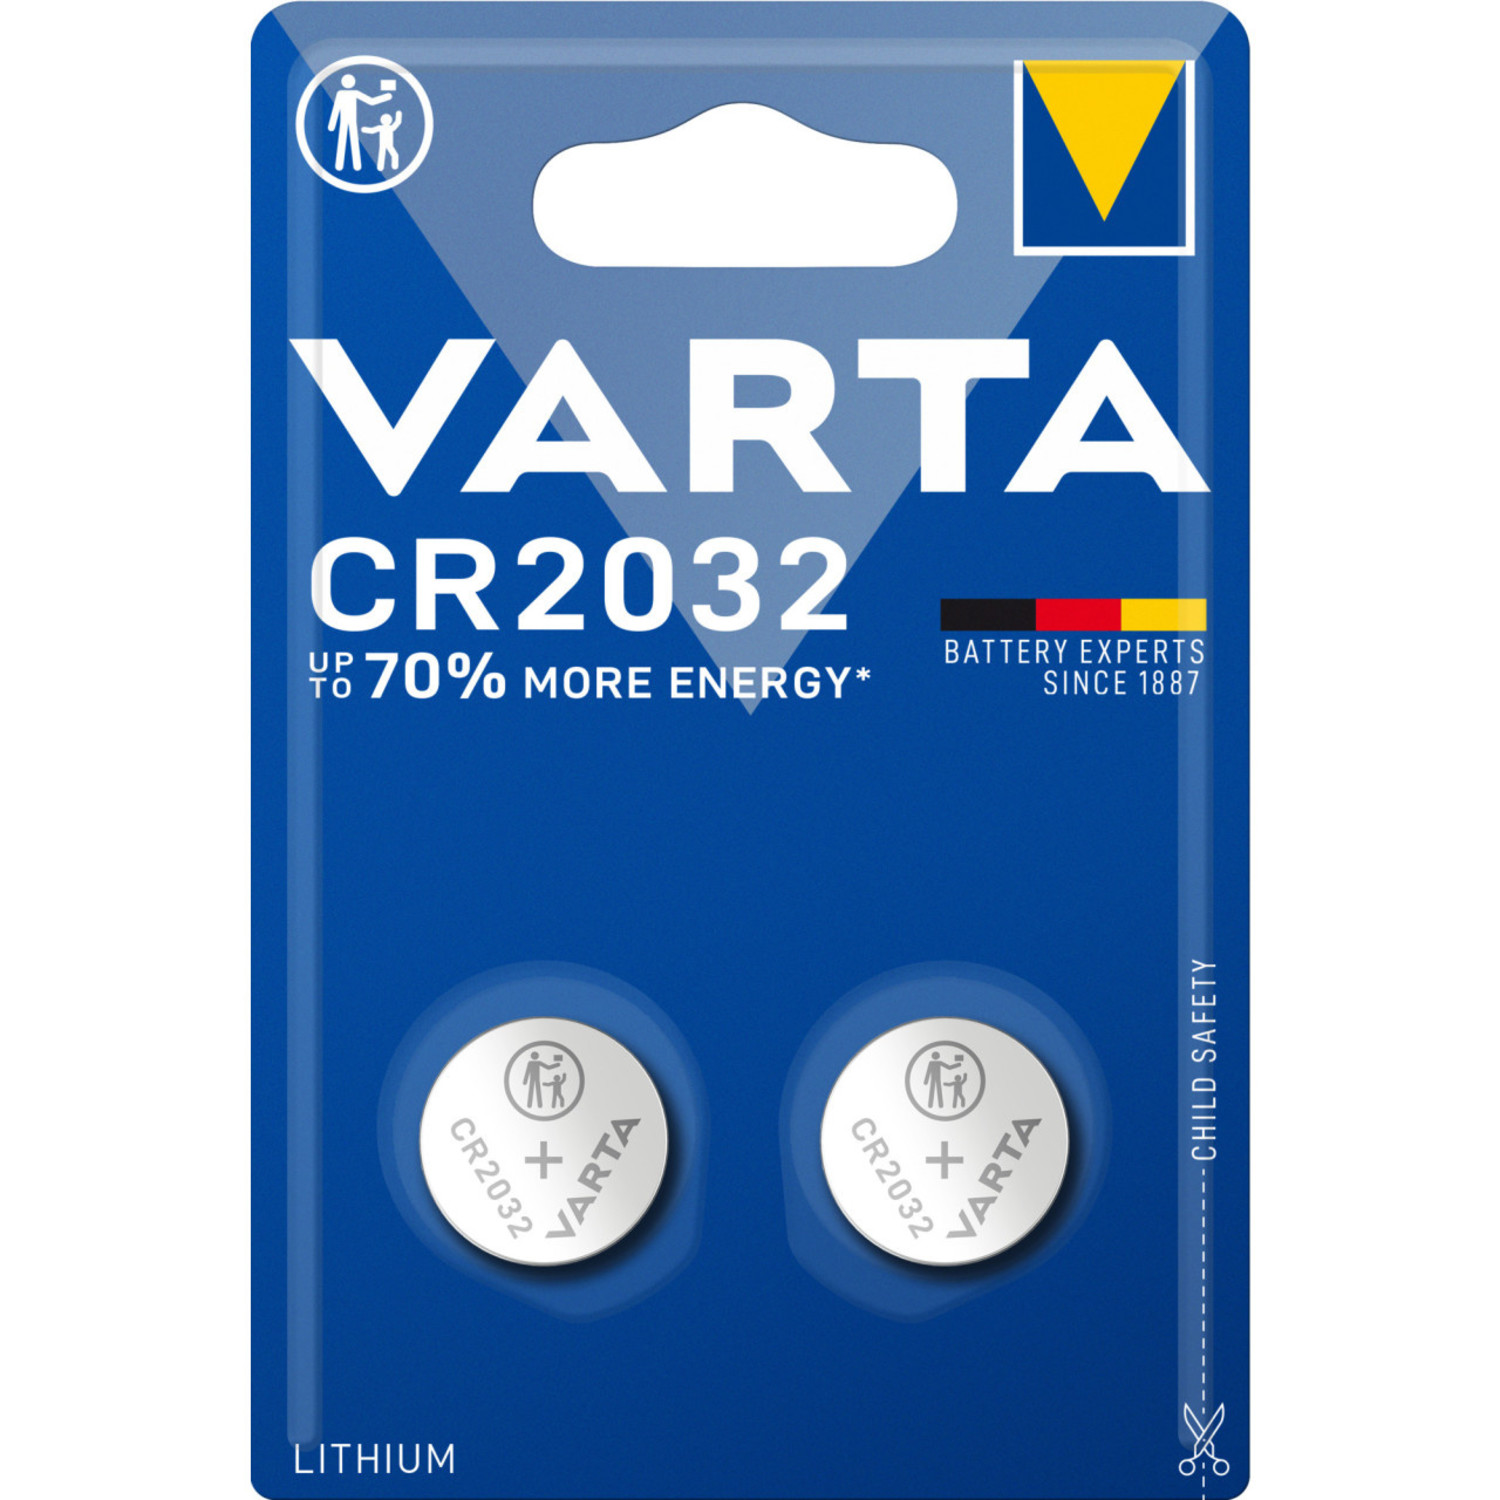 Niet meer geldig Nathaniel Ward berekenen CR2032 Varta Lithium batterij - 2 stuks - Beterbatterij